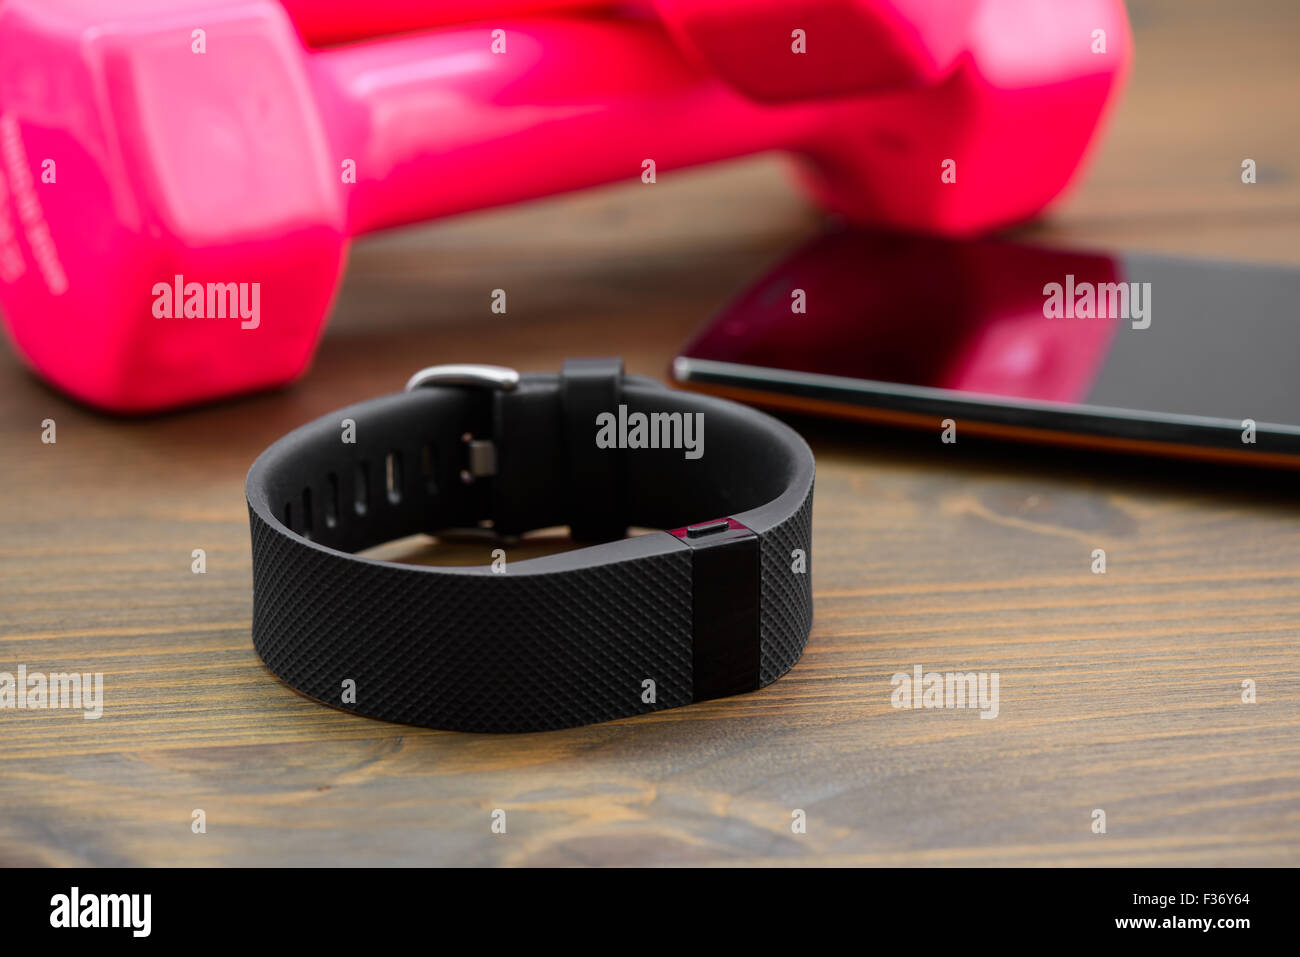 Dispositivo indossabile, wirst watch tipo Sport Tracker con lo smartphone e di colore rosa dumb-bell su una tavola di legno Foto Stock